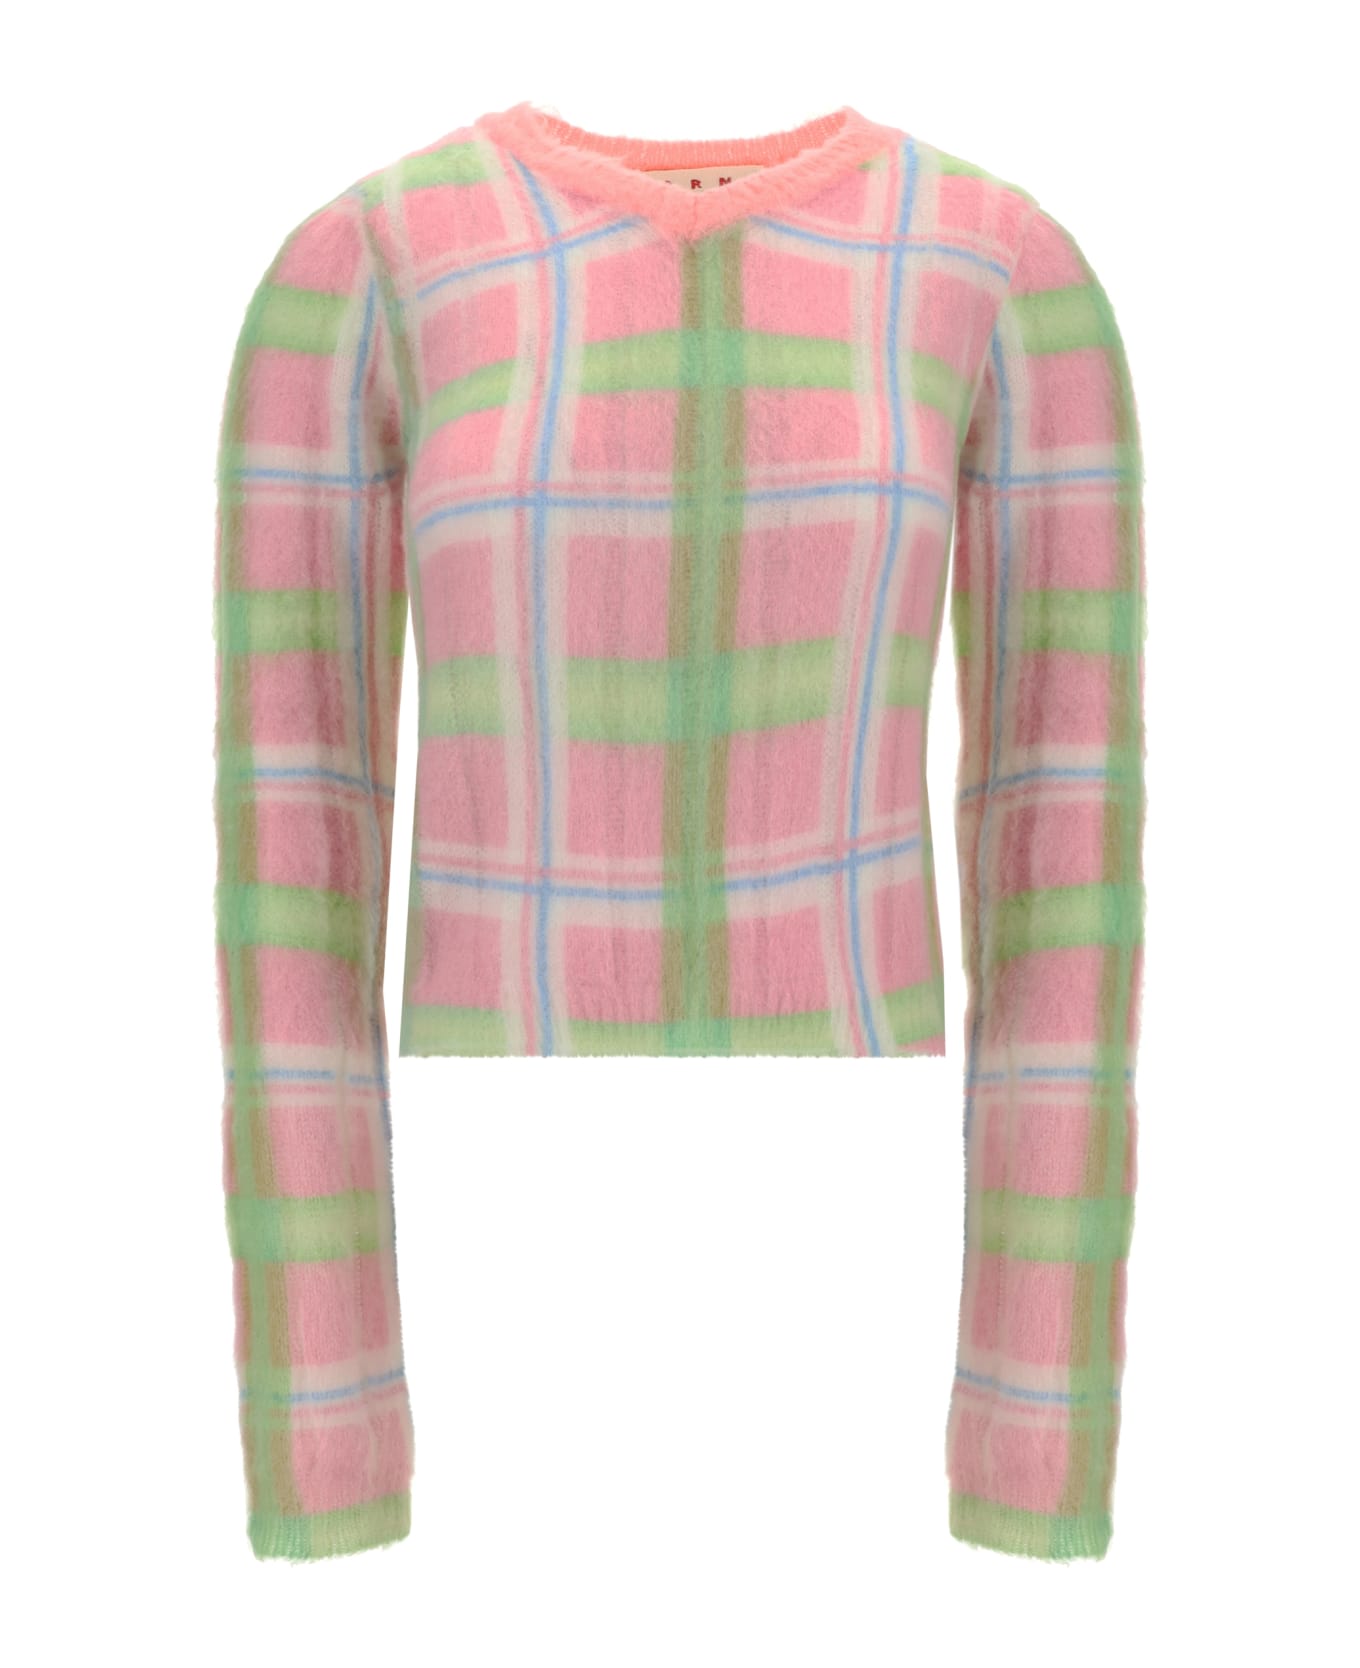 Marni Sweater - Pink ニットウェア